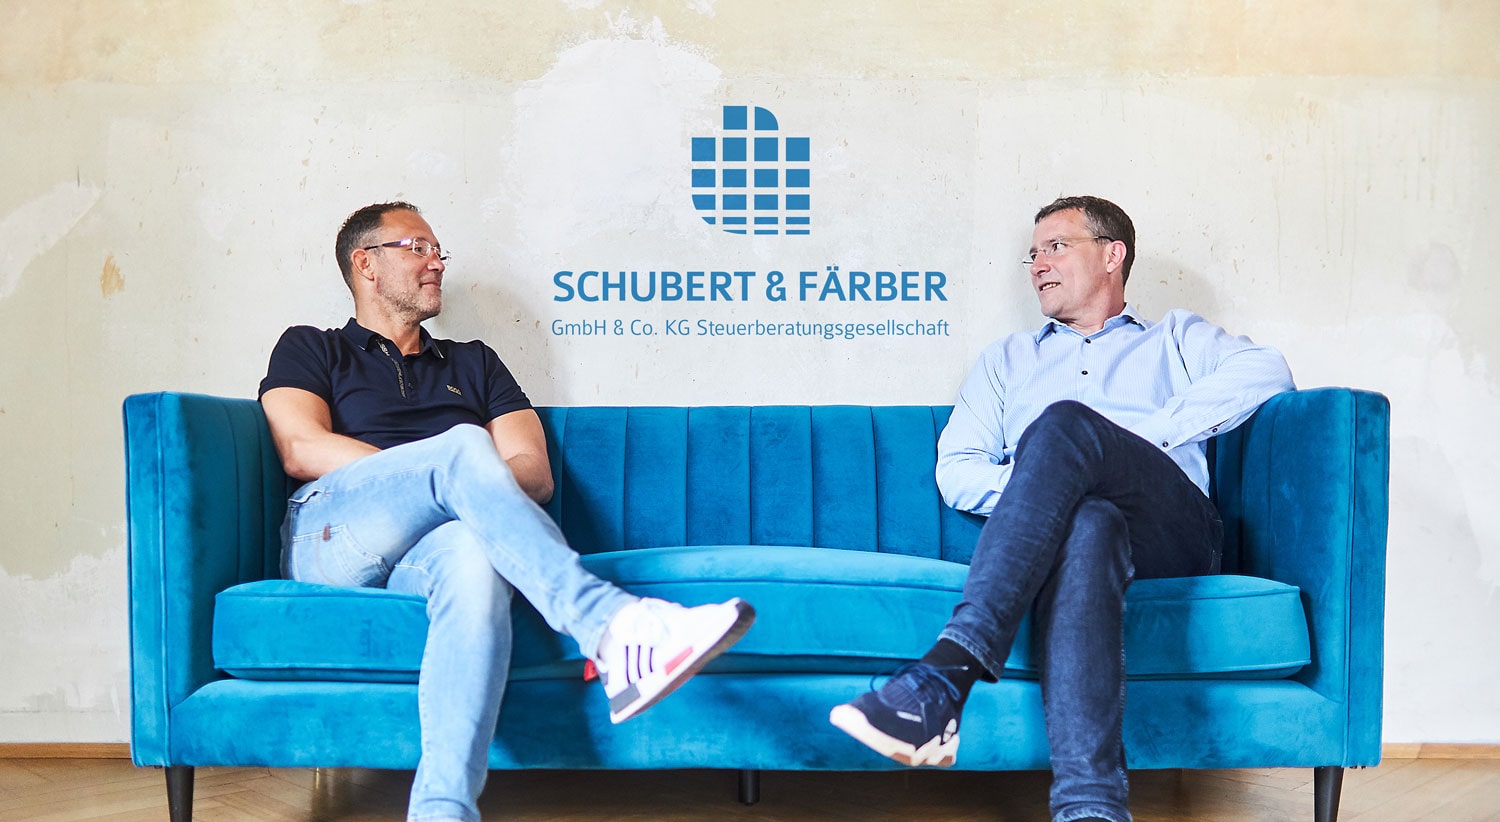 Schubert & Färber GmbH & Co. KG Steuerberatungsgesellschaft